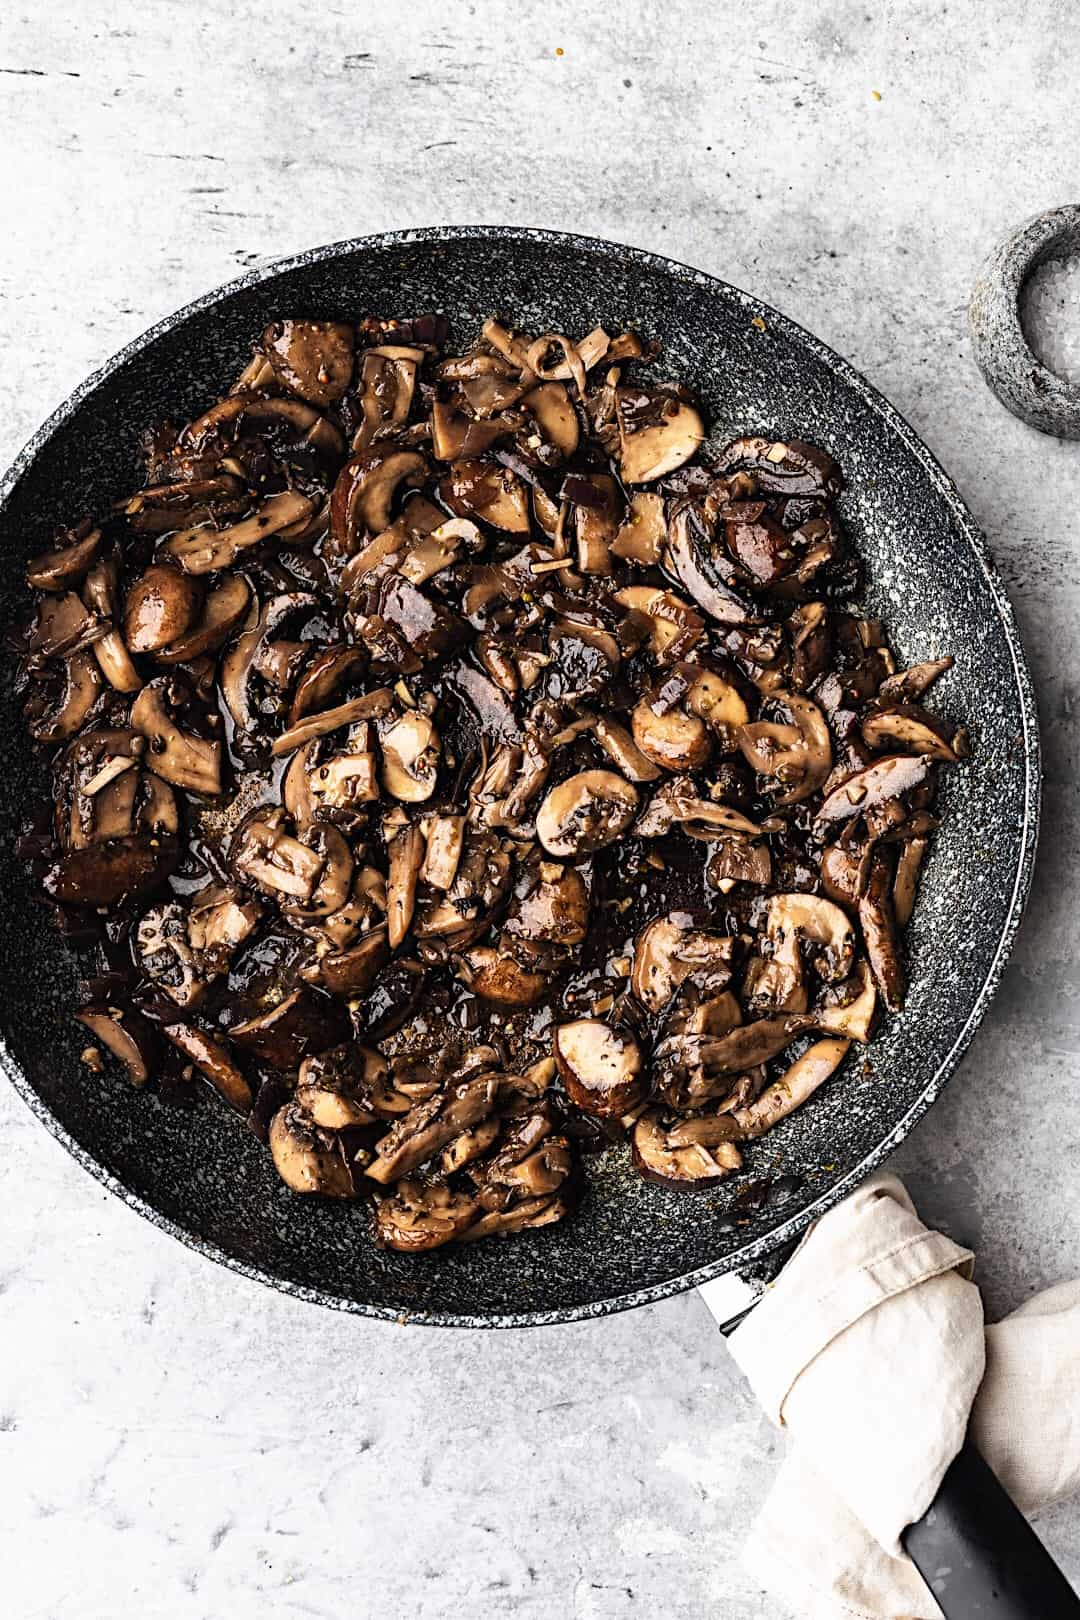 Vegan Mushroom Stroganoff with Wild Rice #vegan #recipe #mushroom #stroganoff #dairyfree #rice #veganrecipe #food